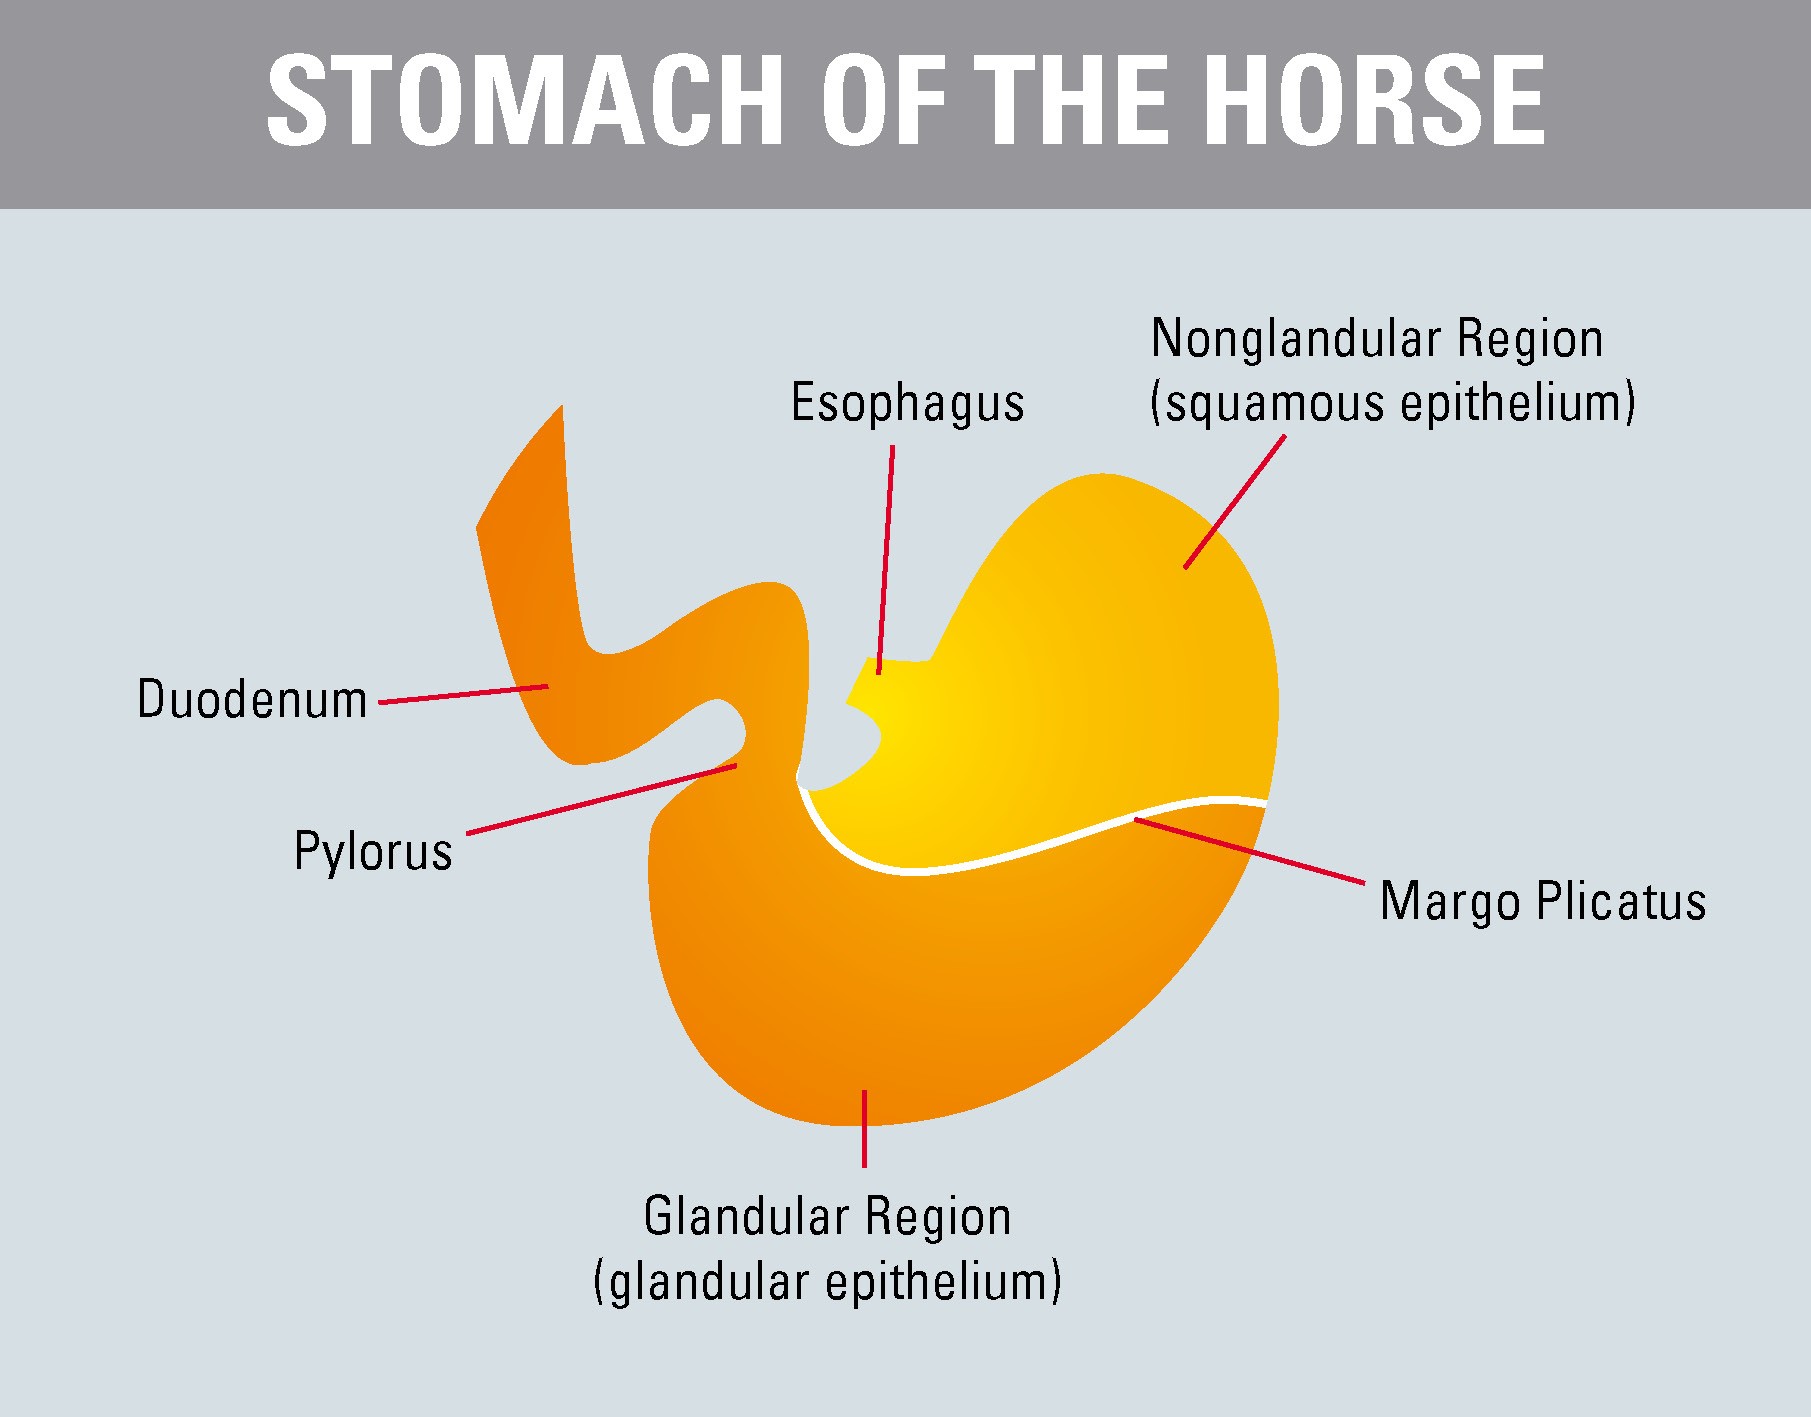 L’alimentation des chevaux souffrant d’ulcères gastriques